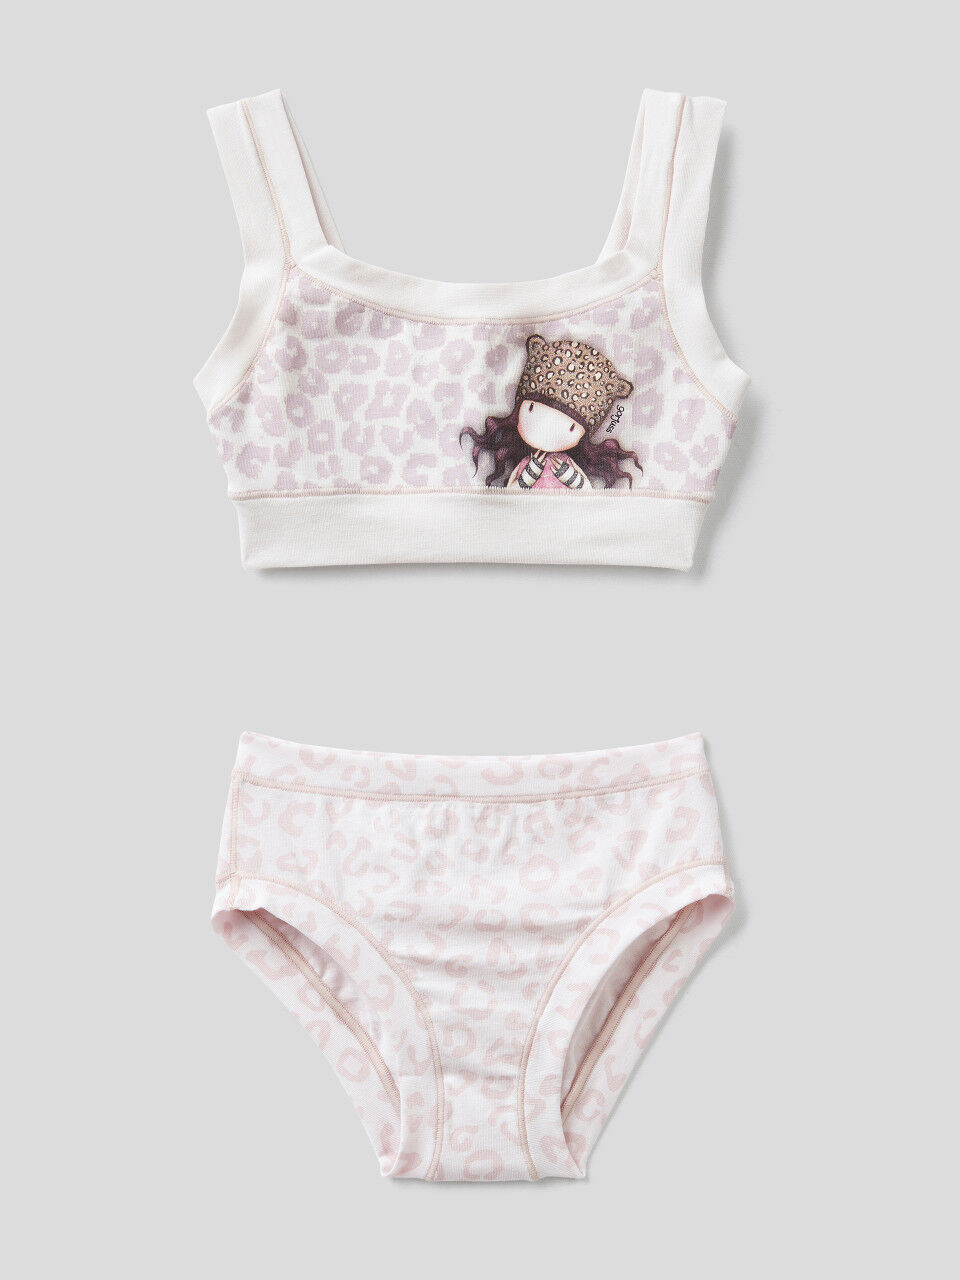 Bra and underwear with Gorjuss print